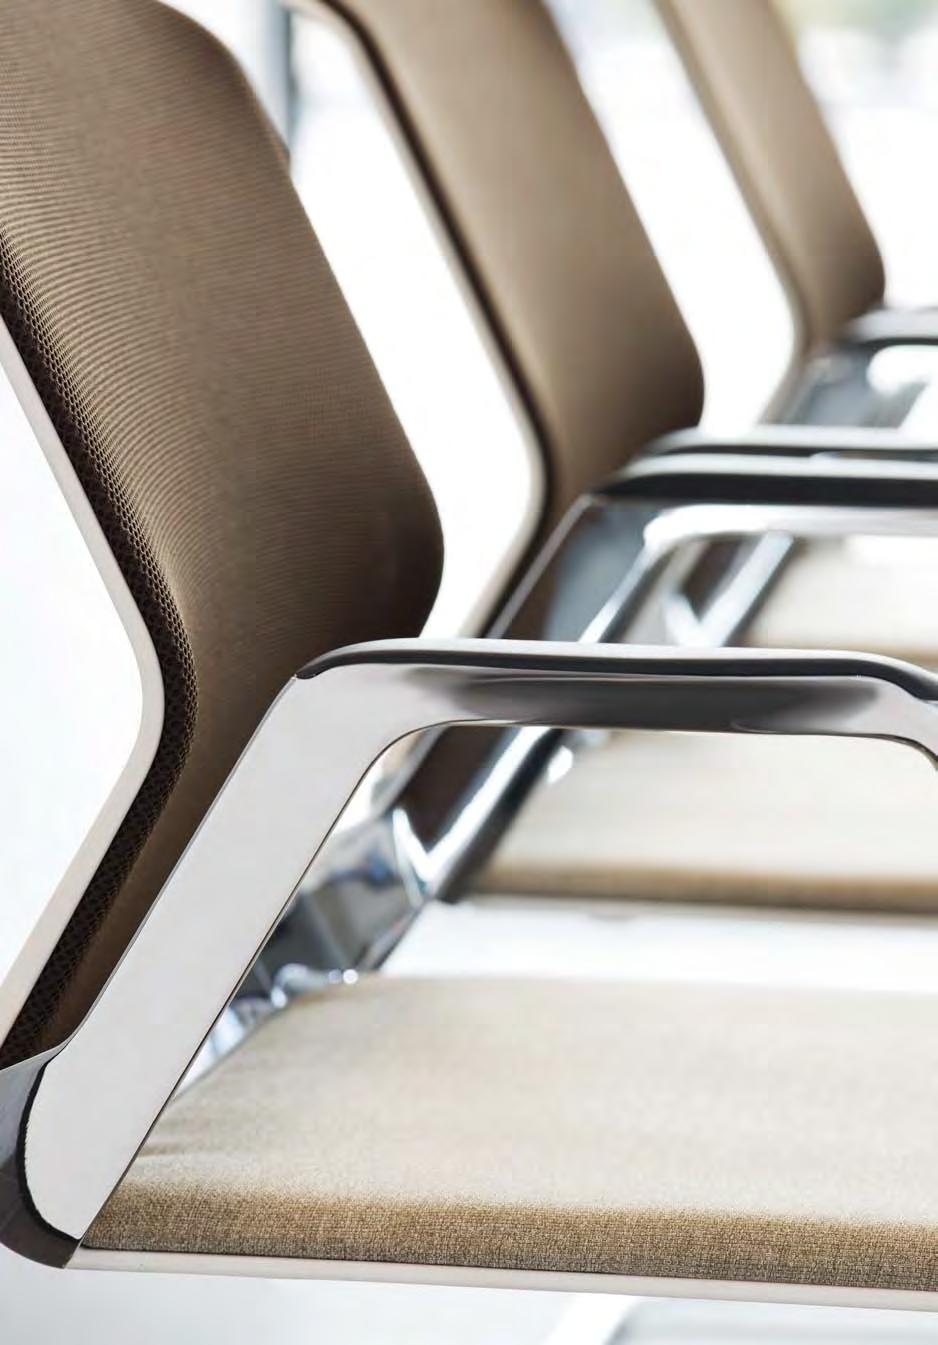 SITAGTEAM schafft das Ambiente für erfolgreiche Konferenzen. D ALS hochwertigere konferenzlösung ist zudem eine Drehstuhl-Variante auf Fusskreuz mit gleitern erhältlich.